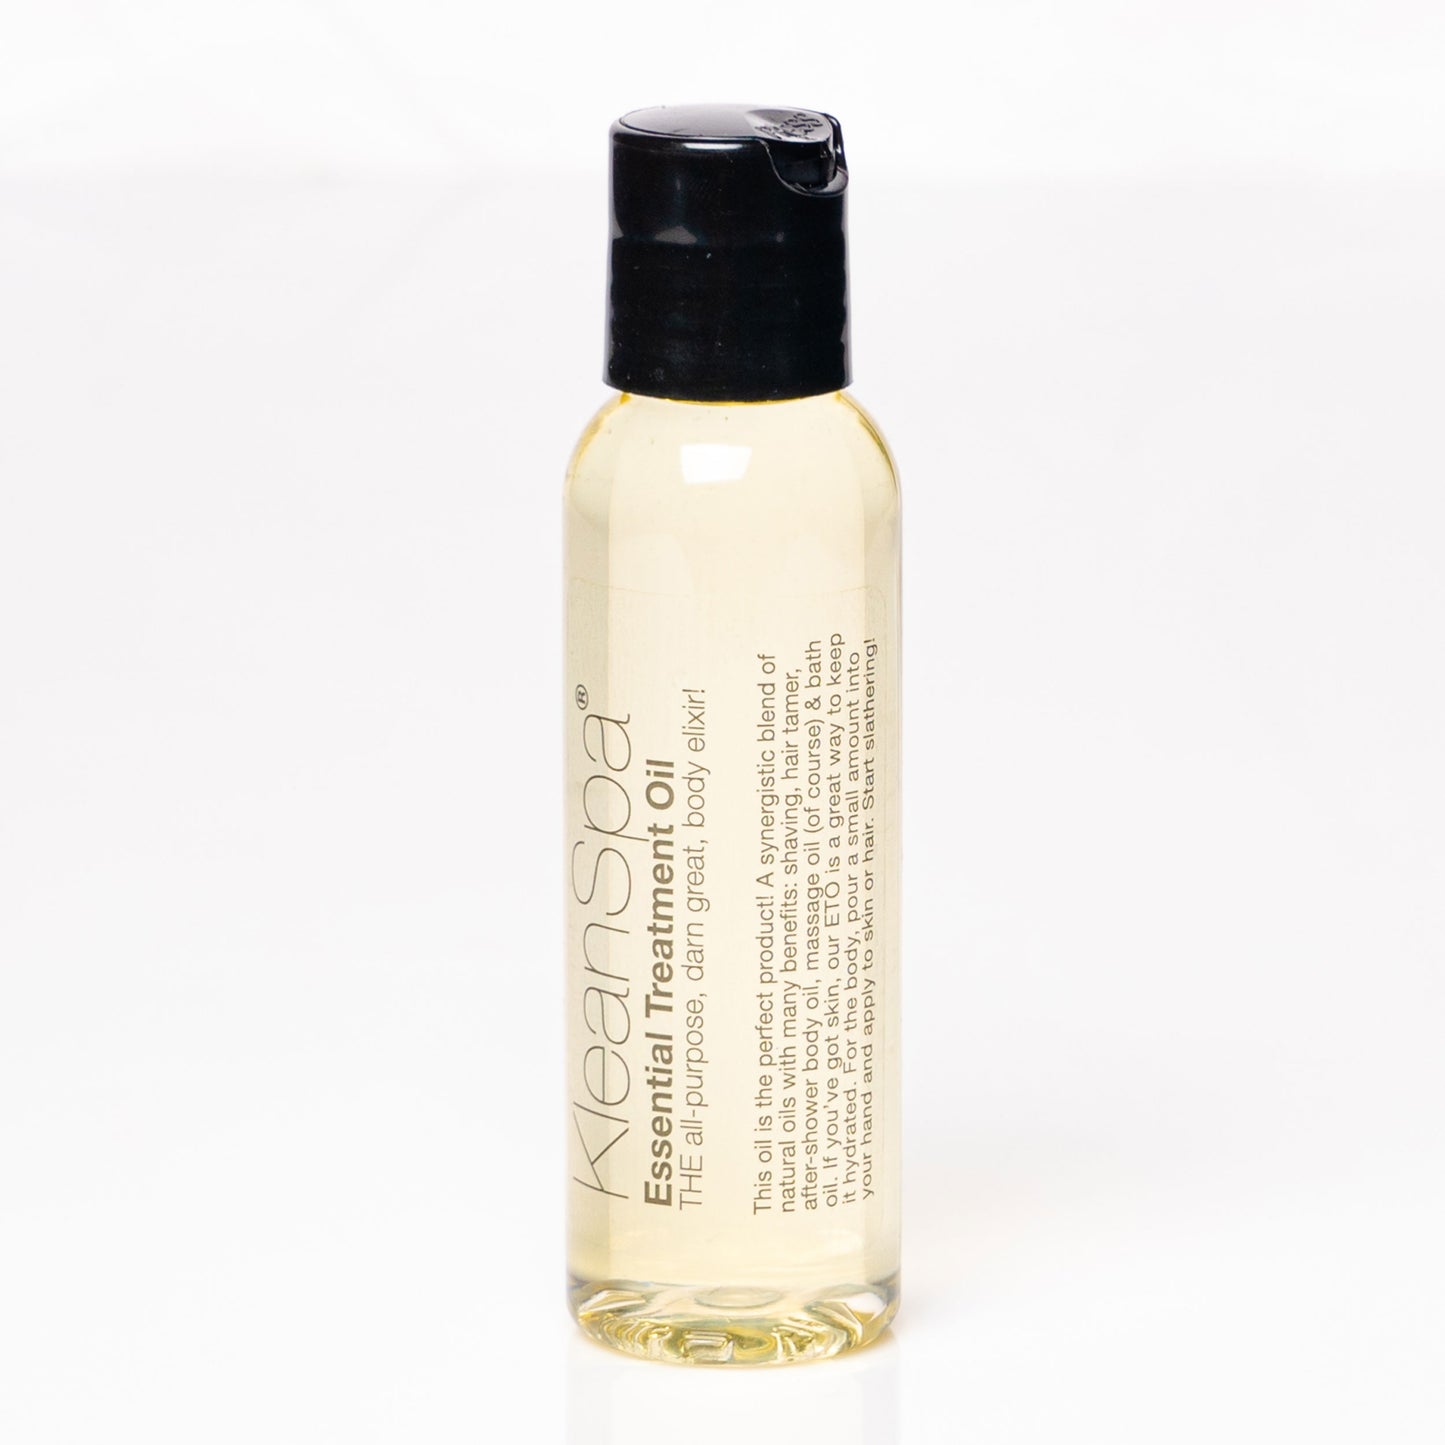 small bottle of custom scented body oil